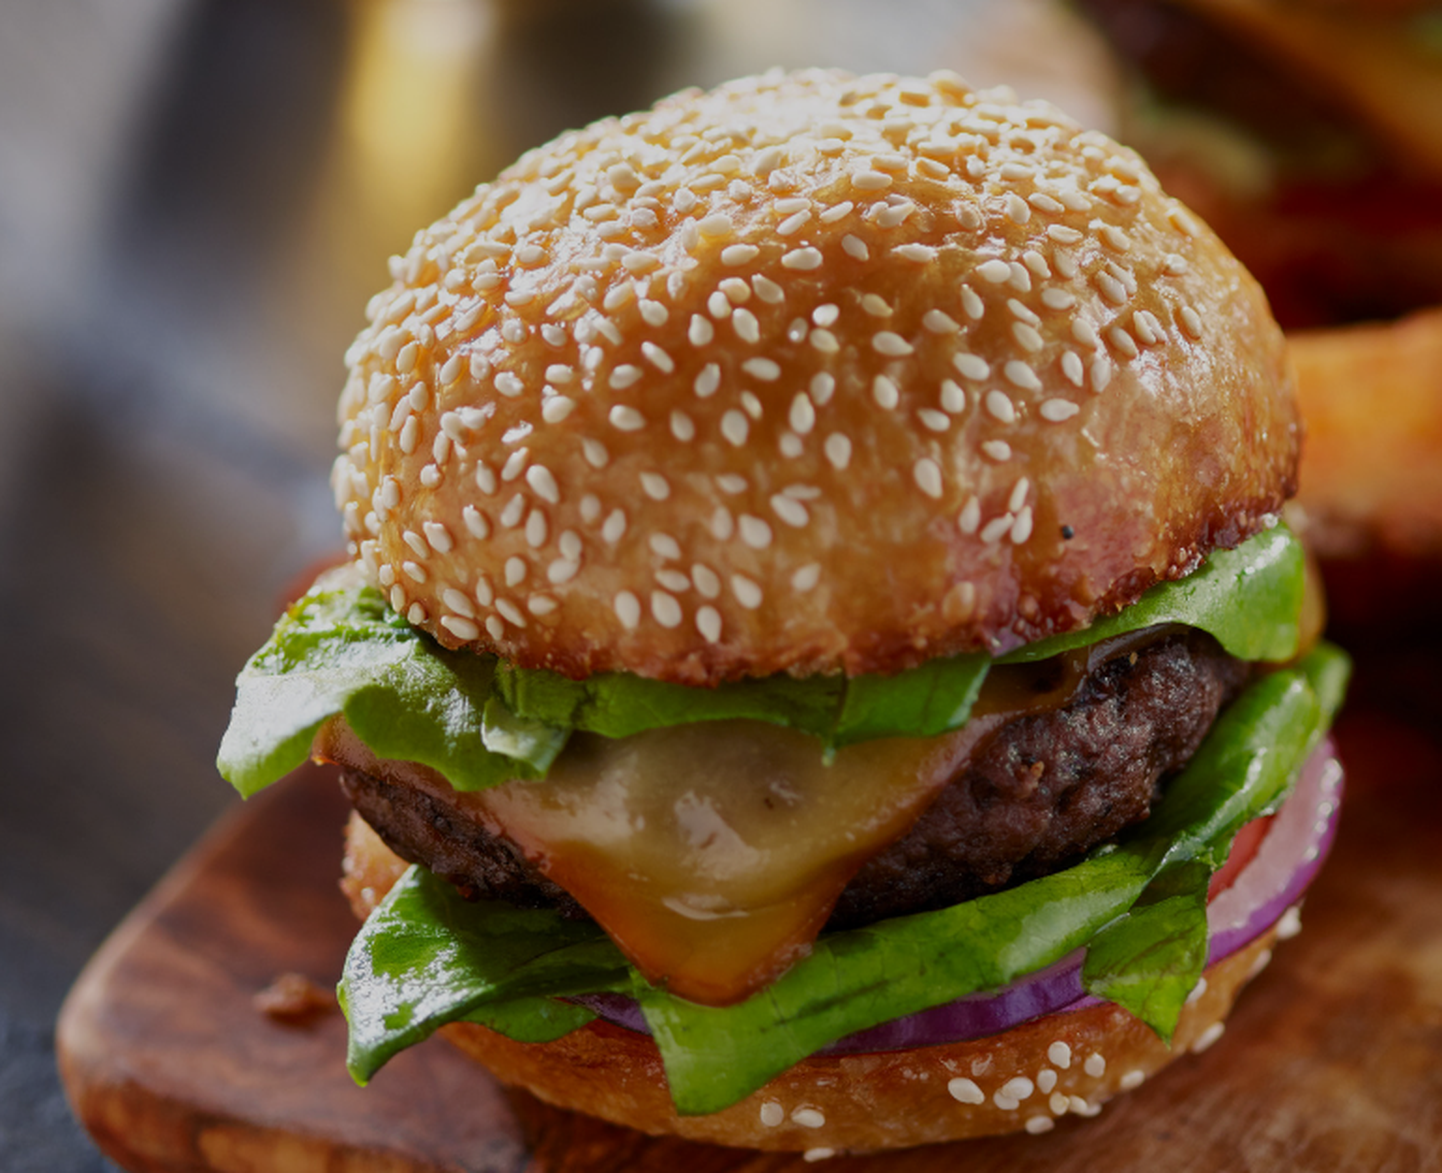 Tulevikus võib burgeri vahelt leida hoopiski taimset päritolu liha.